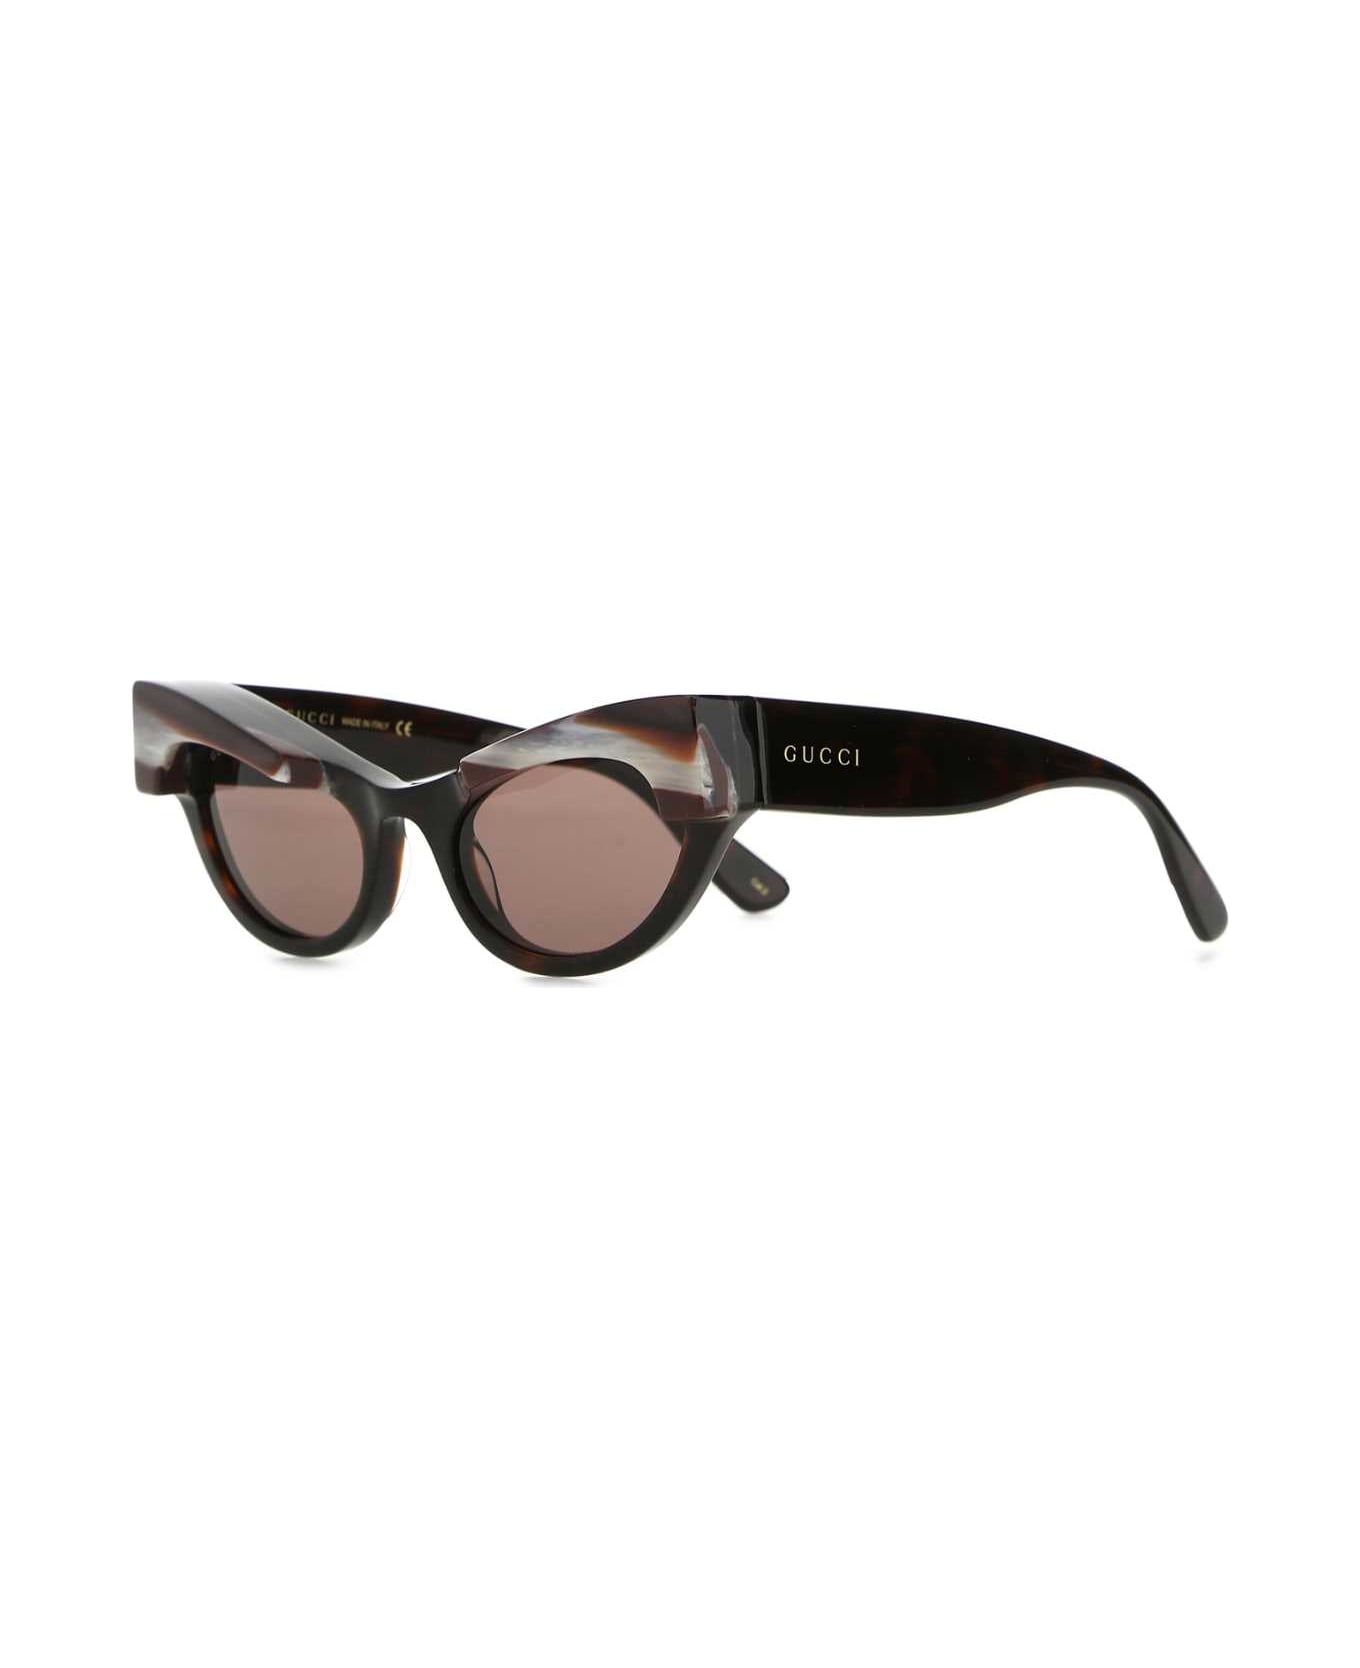 Gucci Multicolor Acetate Sunglasses - 2323